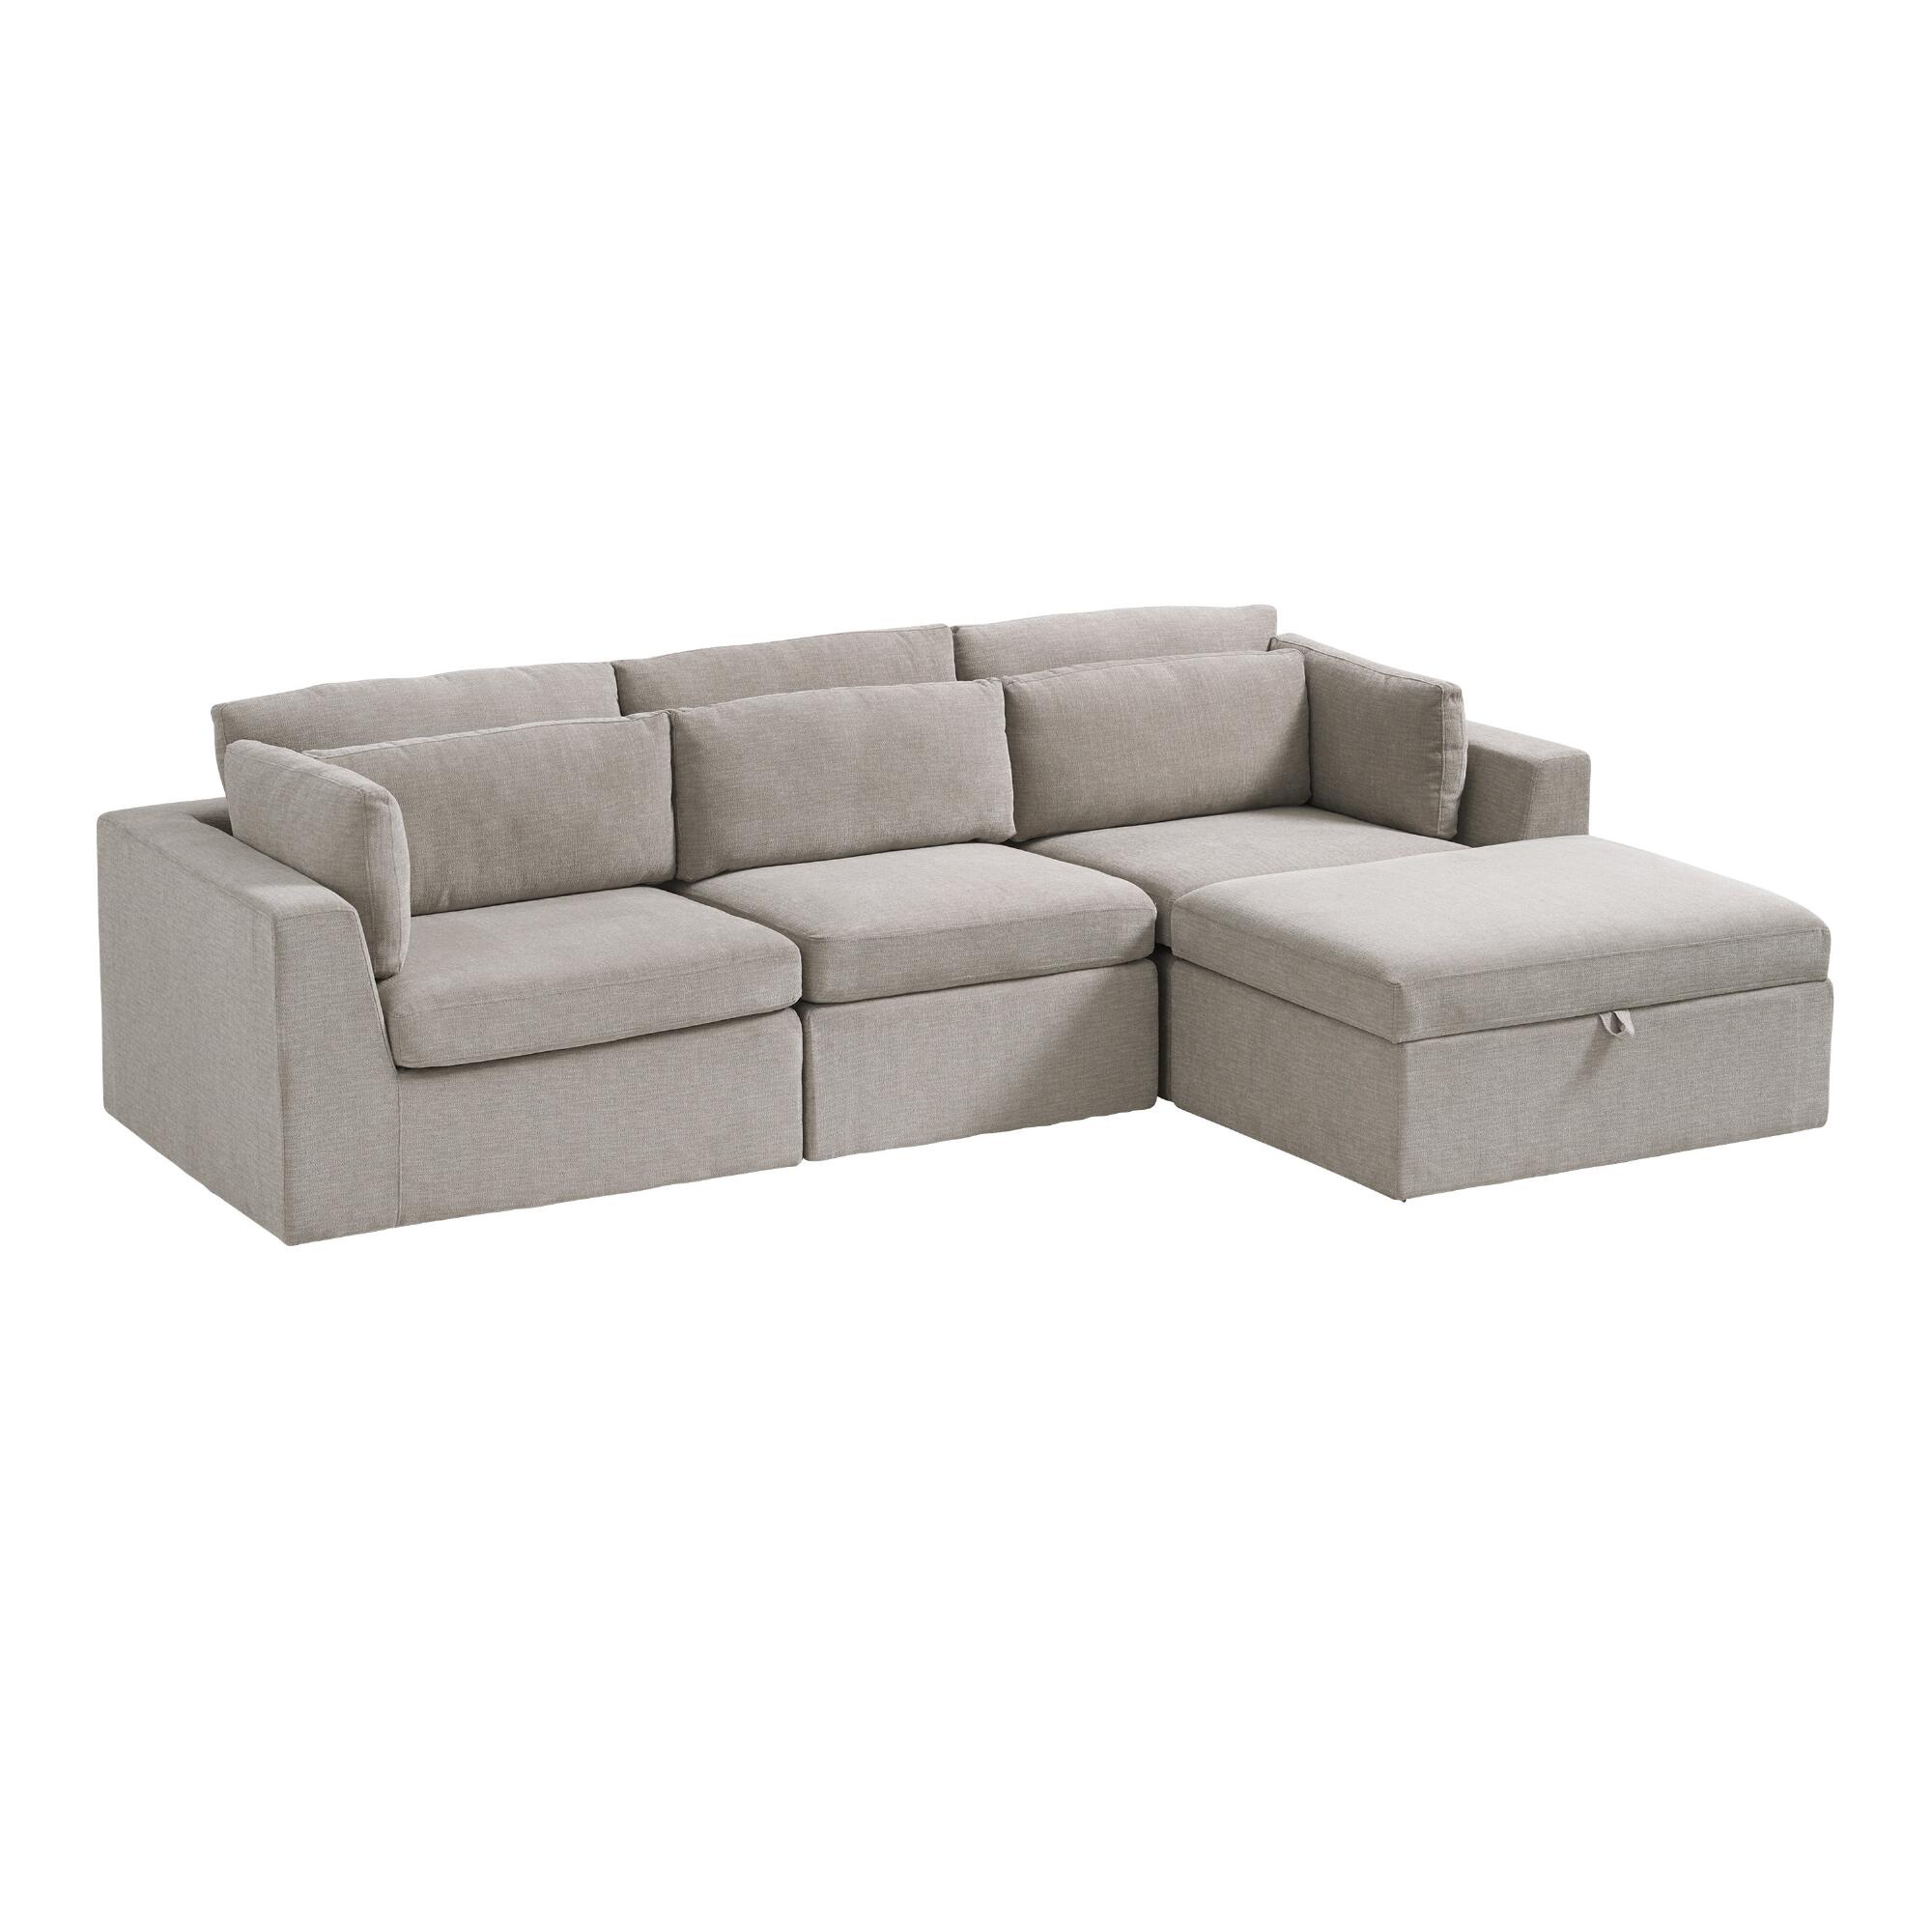 Emmett 4 Piece Modular Sectional Sofa by World Market